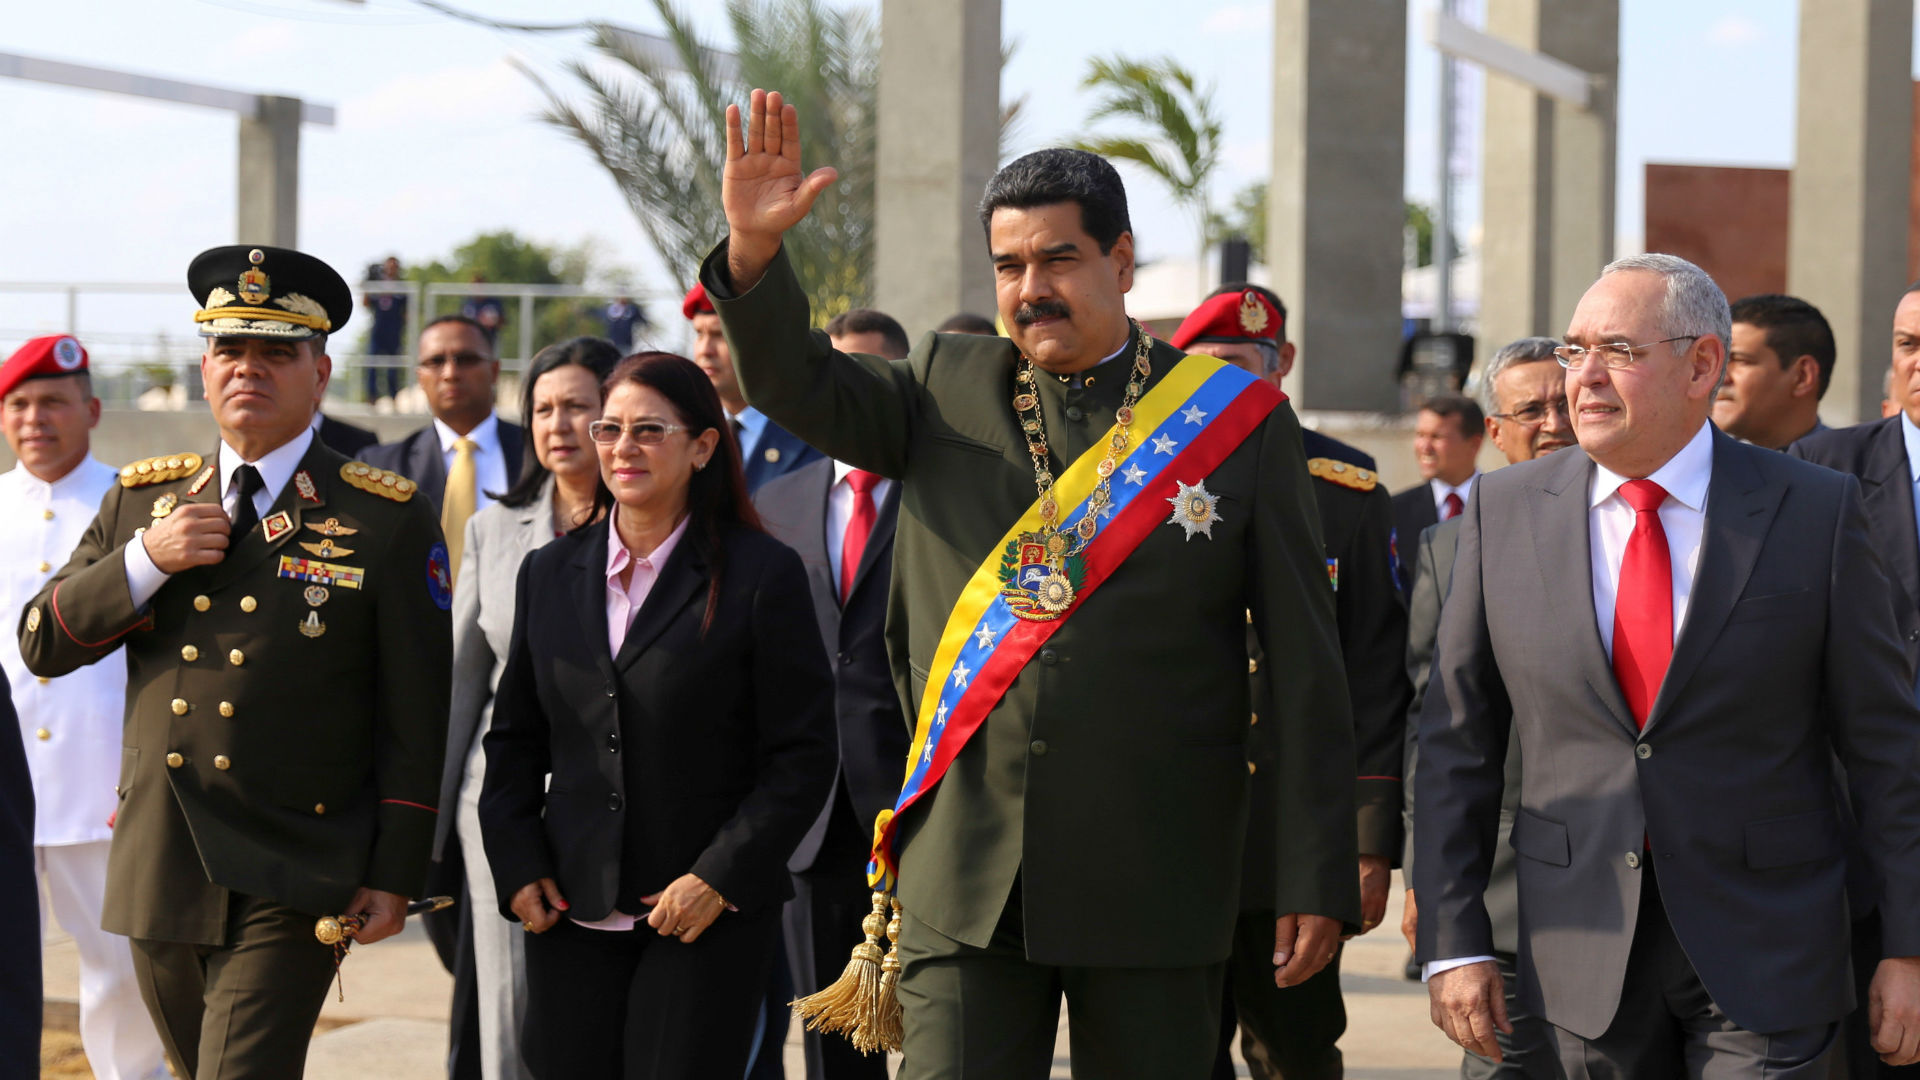 Maduro es atacado con objetos y abucheado tras un desfile militar en Venezuela